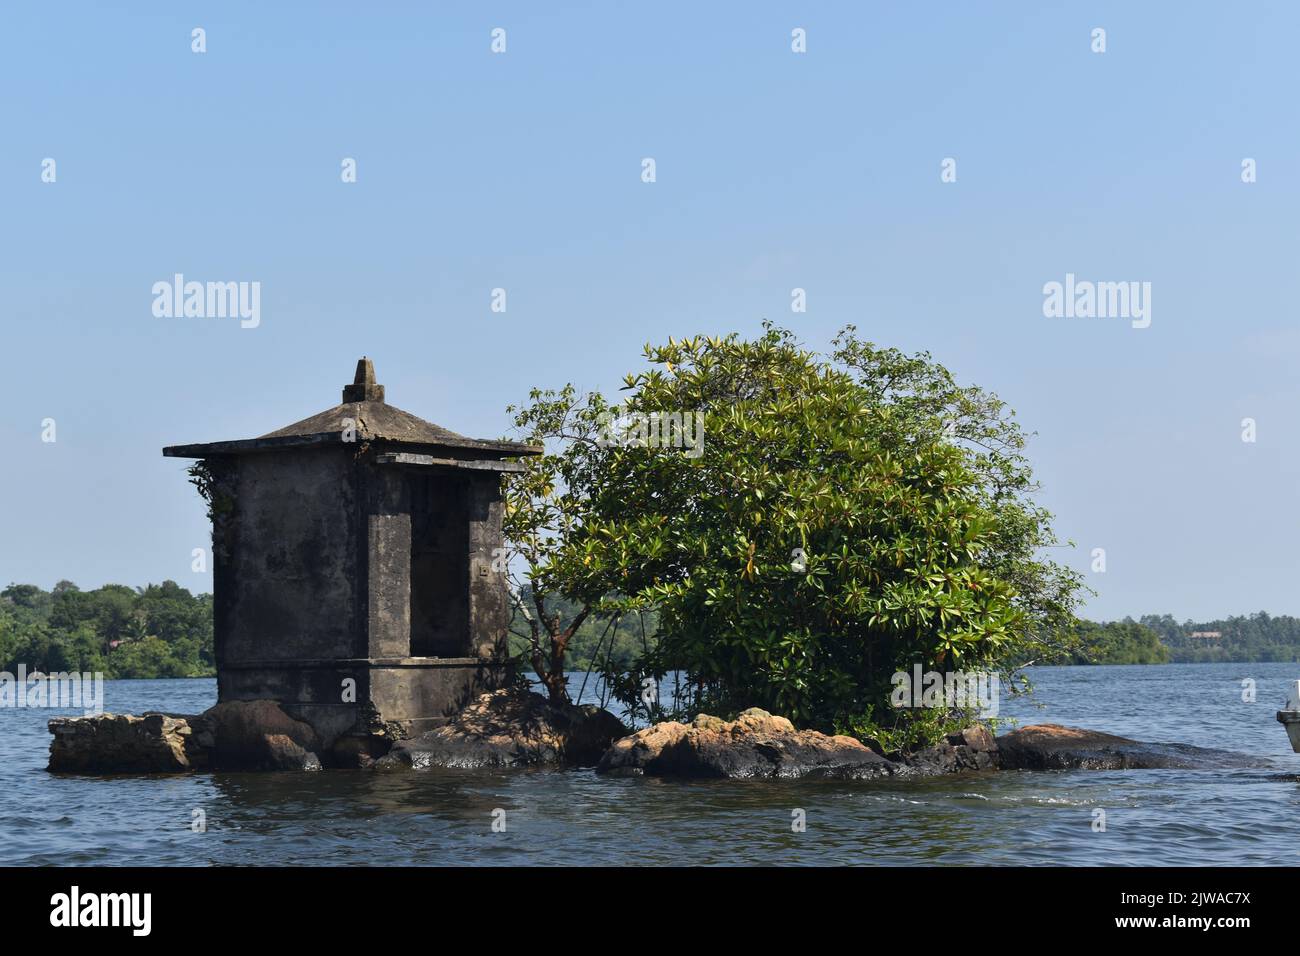 El islote más pequeño del lago Madu Ganga se llama “Satha Paha Doowa”. “Paha” se traduce como “cinco”, mientras que “Satha” significa “centavo”. Según la tradición local, el islote había sido comprado una vez por cinco centavos. Pero otros dicen, él consiguió su nombre debido a la forma o el tamaño pequeño que se asemeja apenas a una moneda pequeña. Sin embargo, FICE-CENT-ISLAND es lo suficientemente grande como para llevar un templo. El santuario está dedicado a Kataragama, una deidad venerada por budistas cingaleses e hindúes tamil y animistas de Weddah por igual. En cierto modo, es un Devale, un santuario budista para una deidad hindú. Sri Lanka. Foto de stock